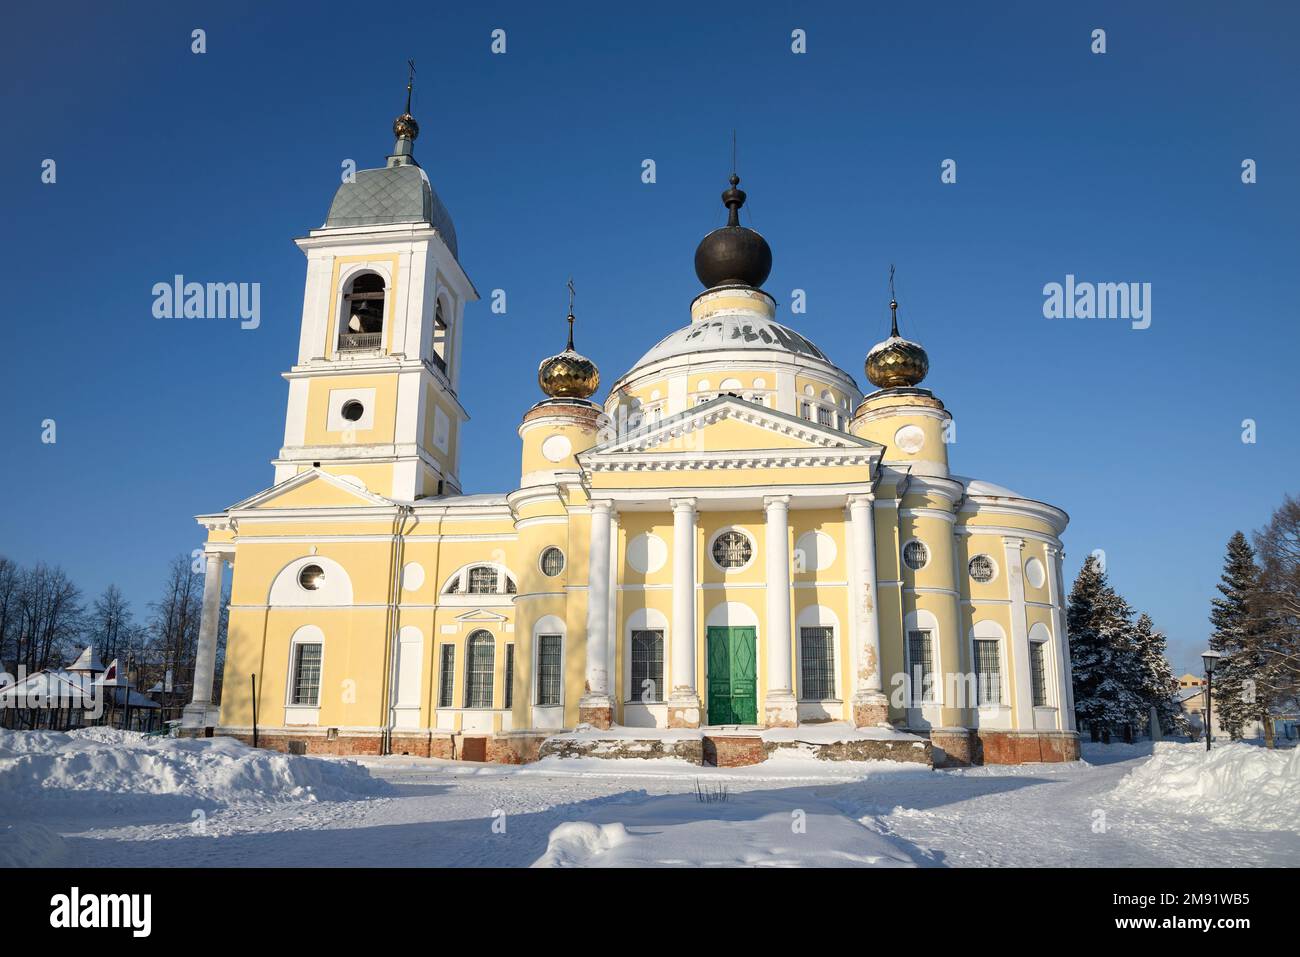 Cathédrale de l'Assomption de la Sainte Vierge Marie. Myshkin, région de Yaroslavl, Russie Banque D'Images